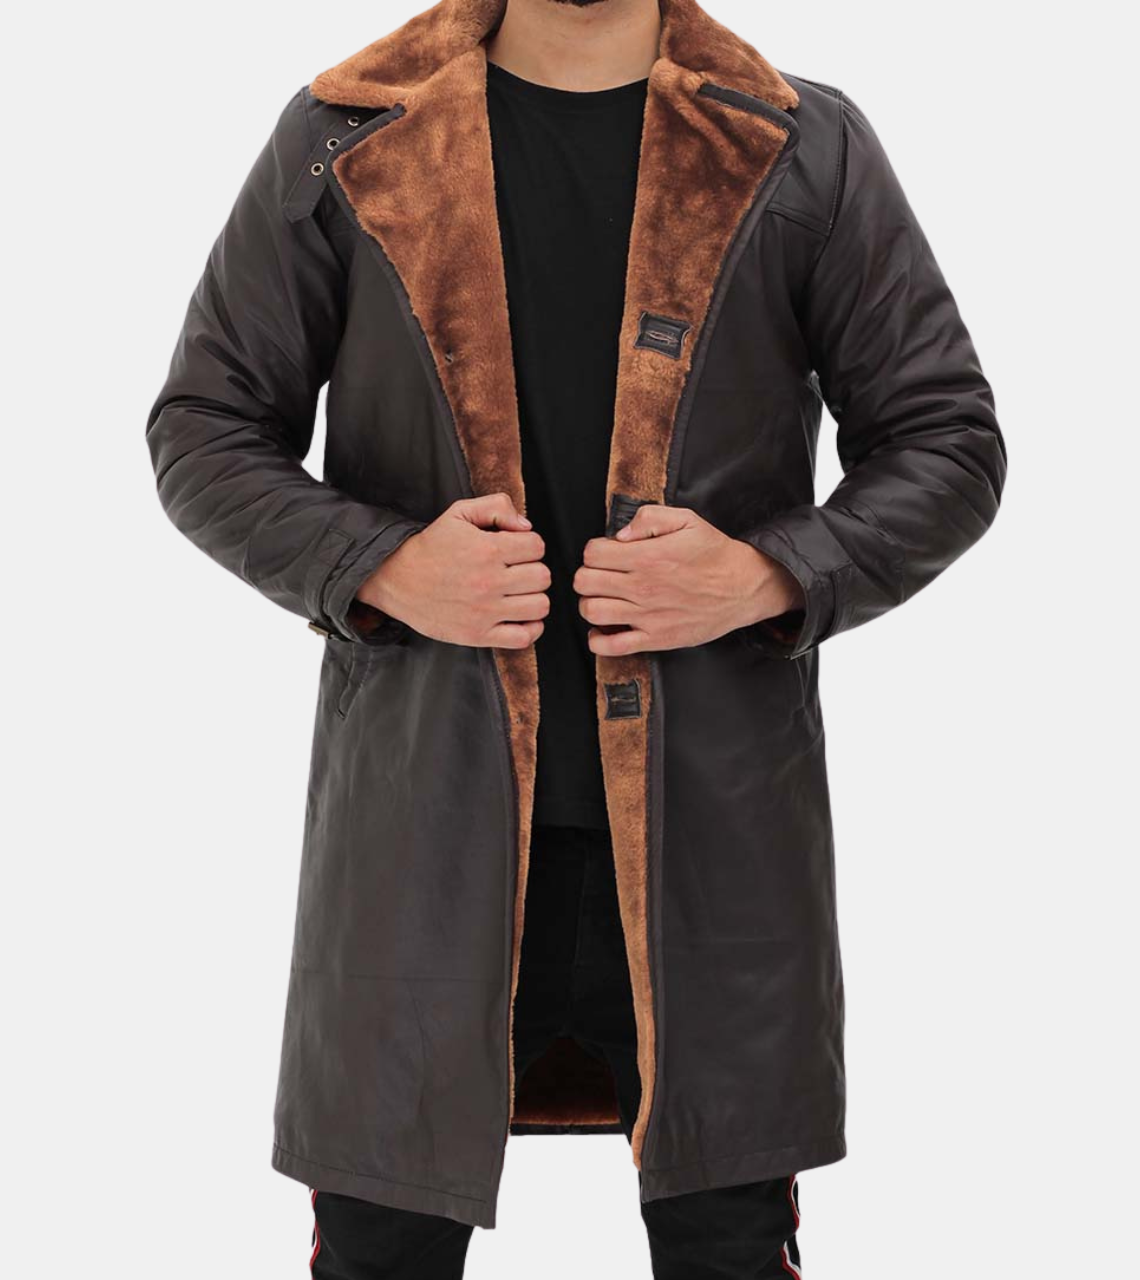  Atlas Men's Brown Shearling Leather Coat 